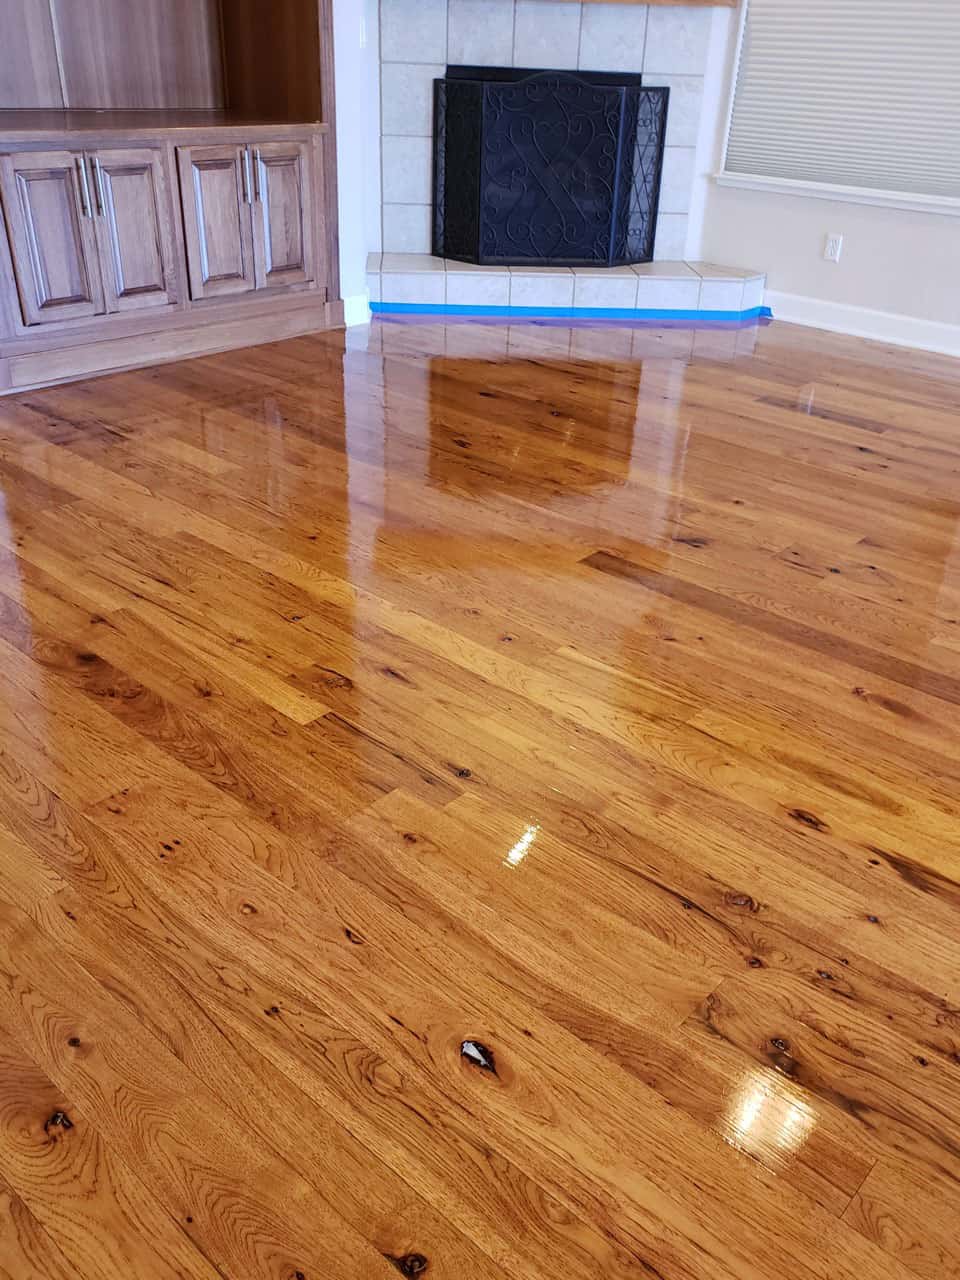 Wet Hardwood Floor After Recoat